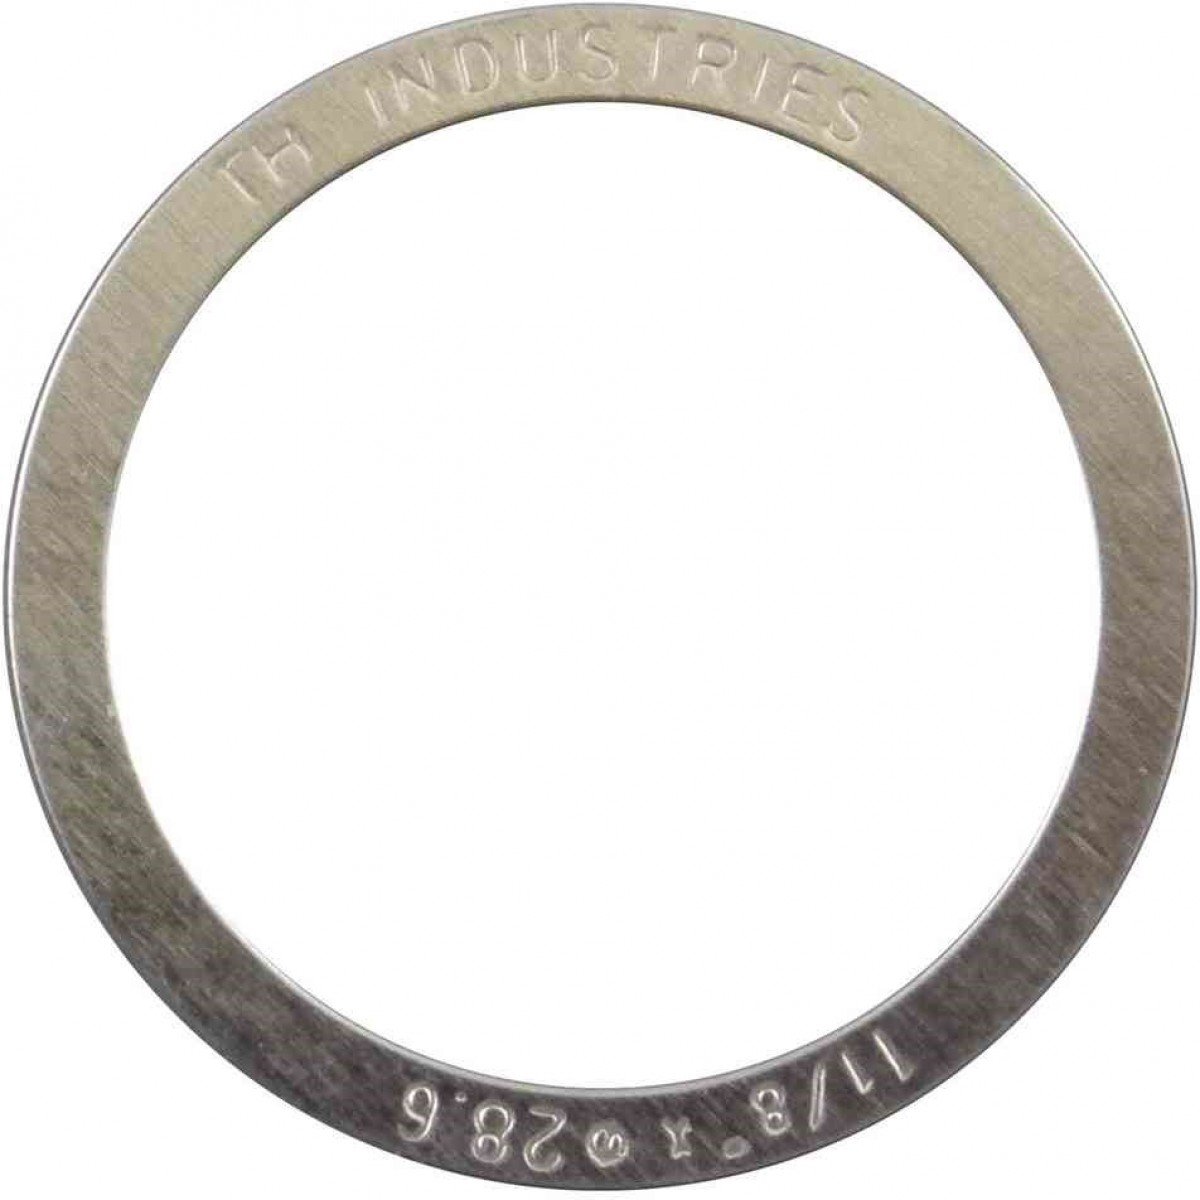 Микро-кольцо прокладочное Elvedes, для рулевой колонки 1-1/8, 0.25 мм, комплект 10 штук, 2017144-10 велосипедный подшипник рулевой колонки elvedes mr168 970e rs acb 1 1 4 ø34хø46 8х7 ø45хø45 2017138